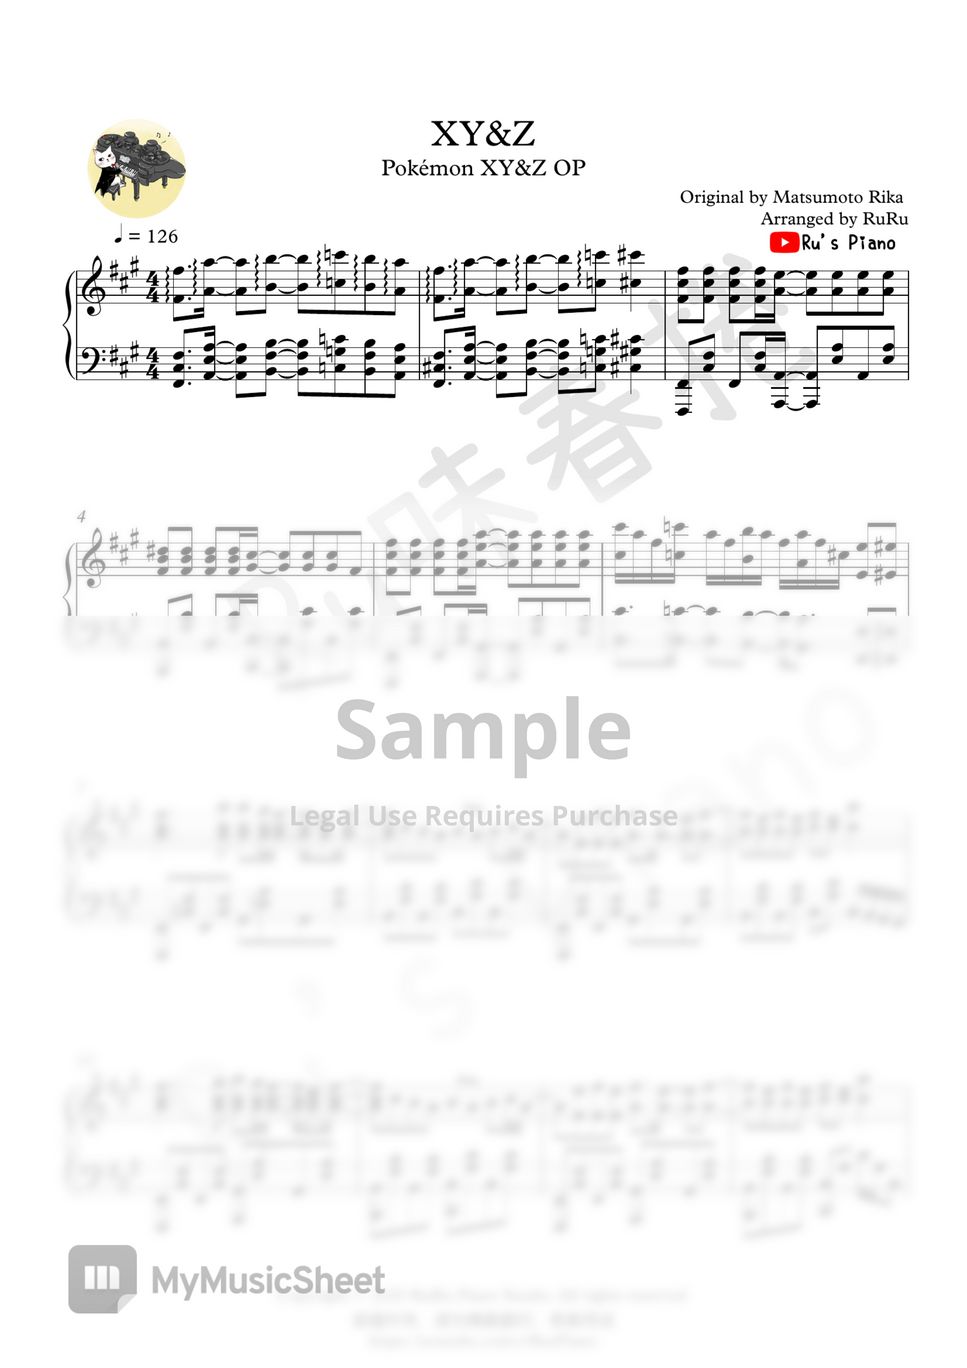 ポケットモンスター XY&Z OP - XY&Z by Ru's Piano